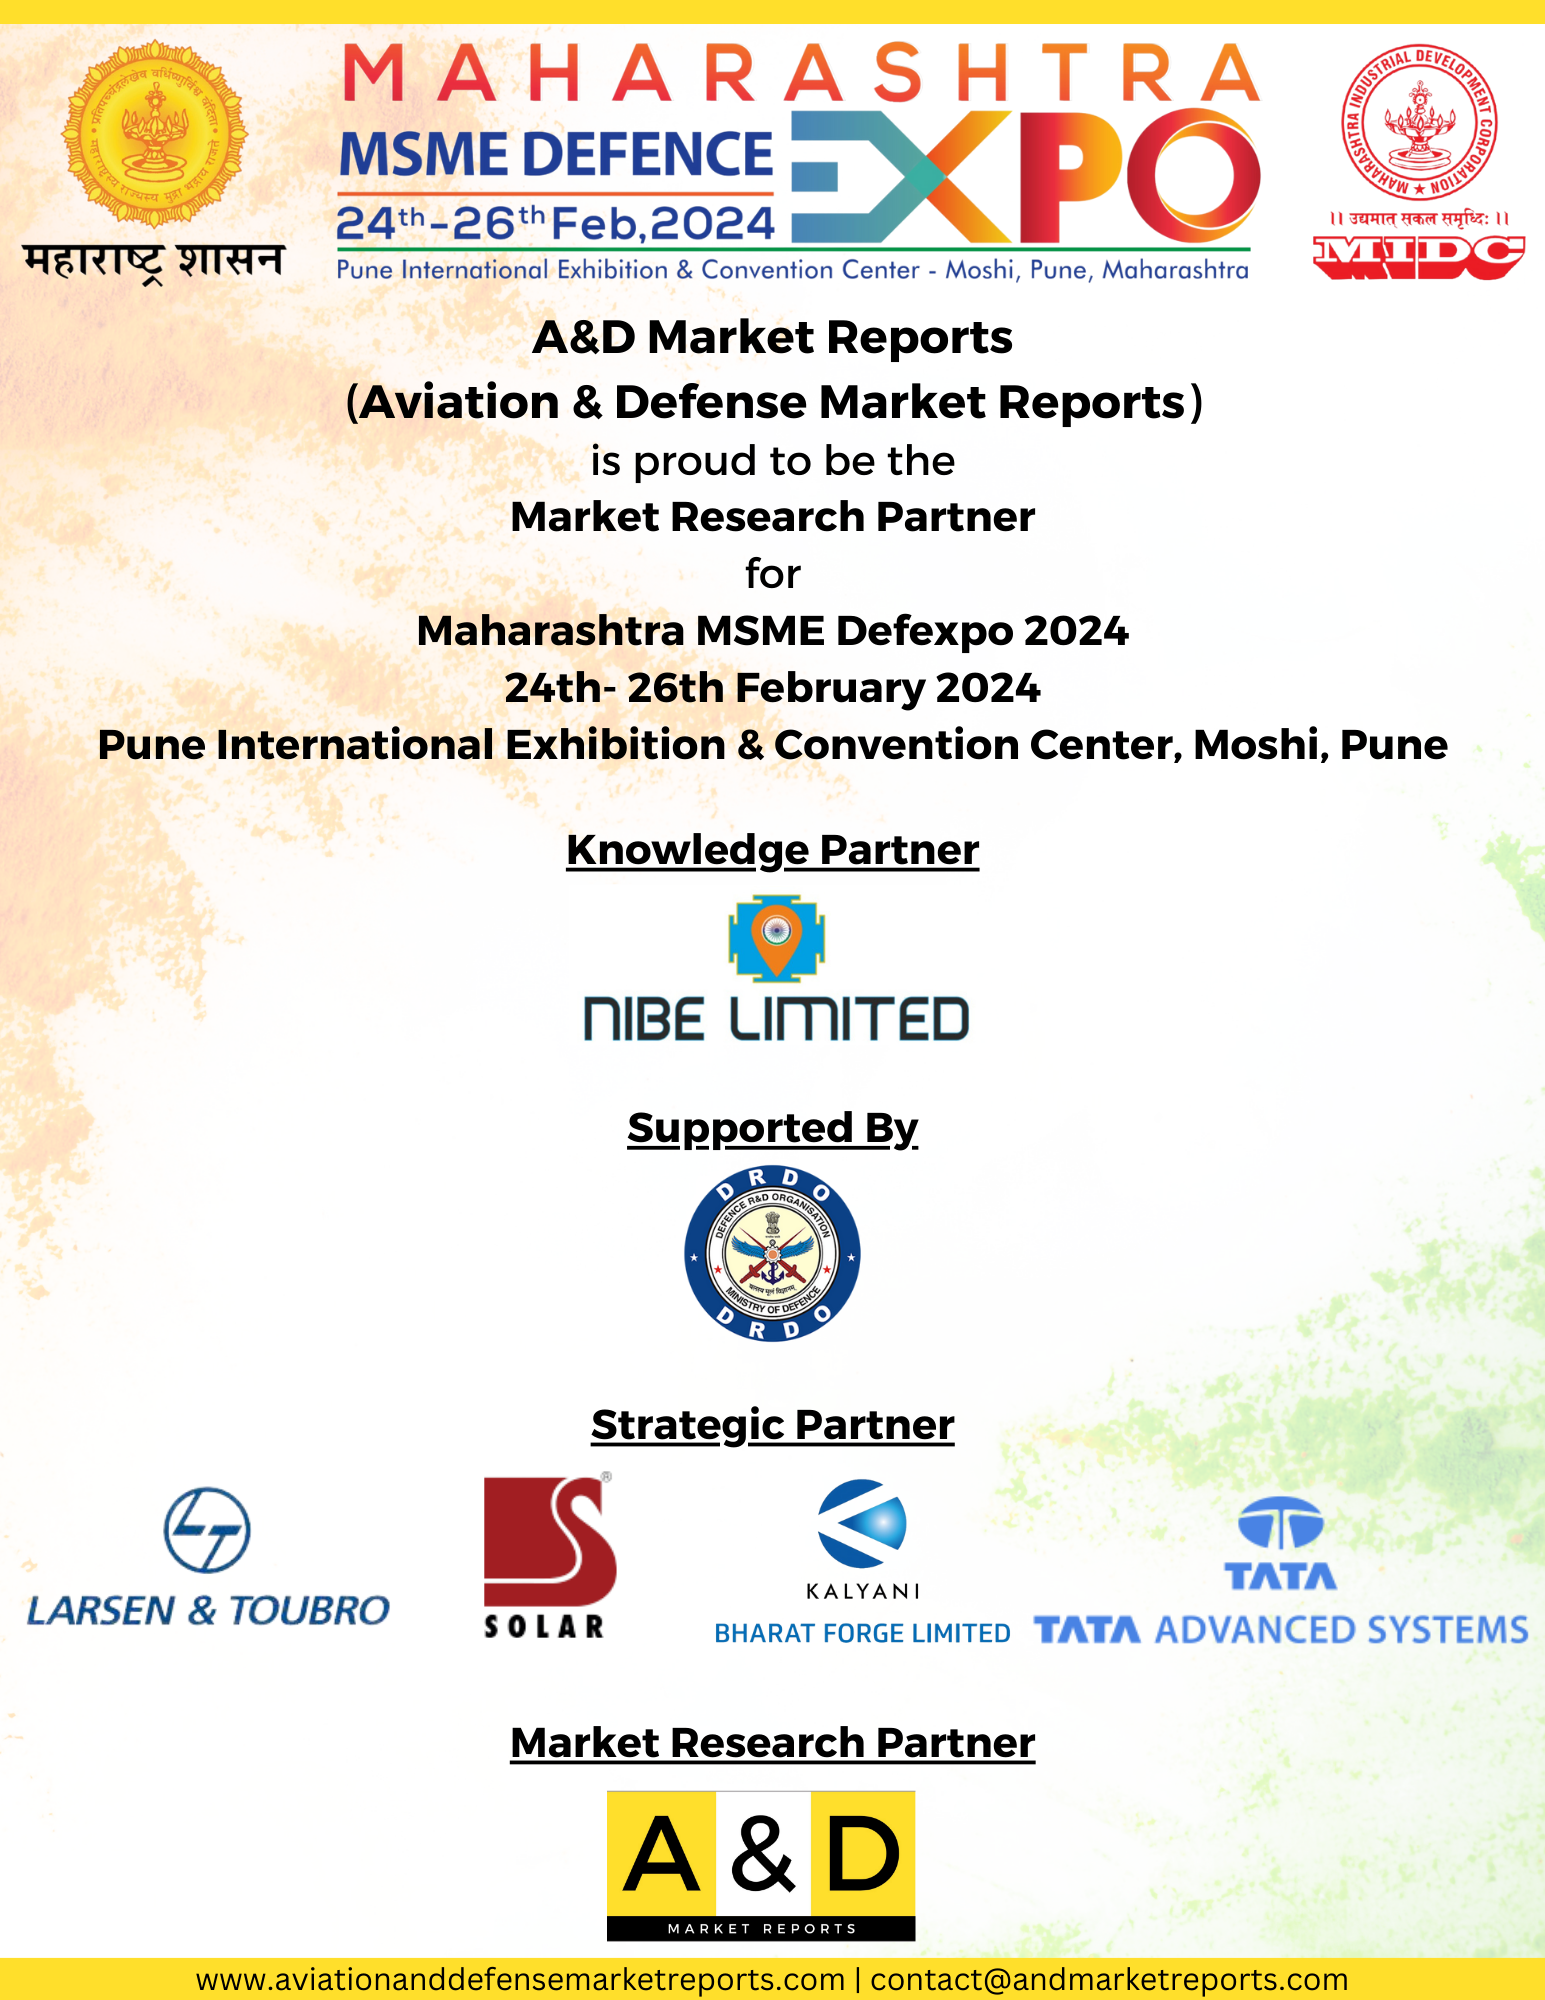 Aviation & Defense Market Reports: Market Research Partner for MSME Defexpo 2024, Mumbai, Maharashtra, India